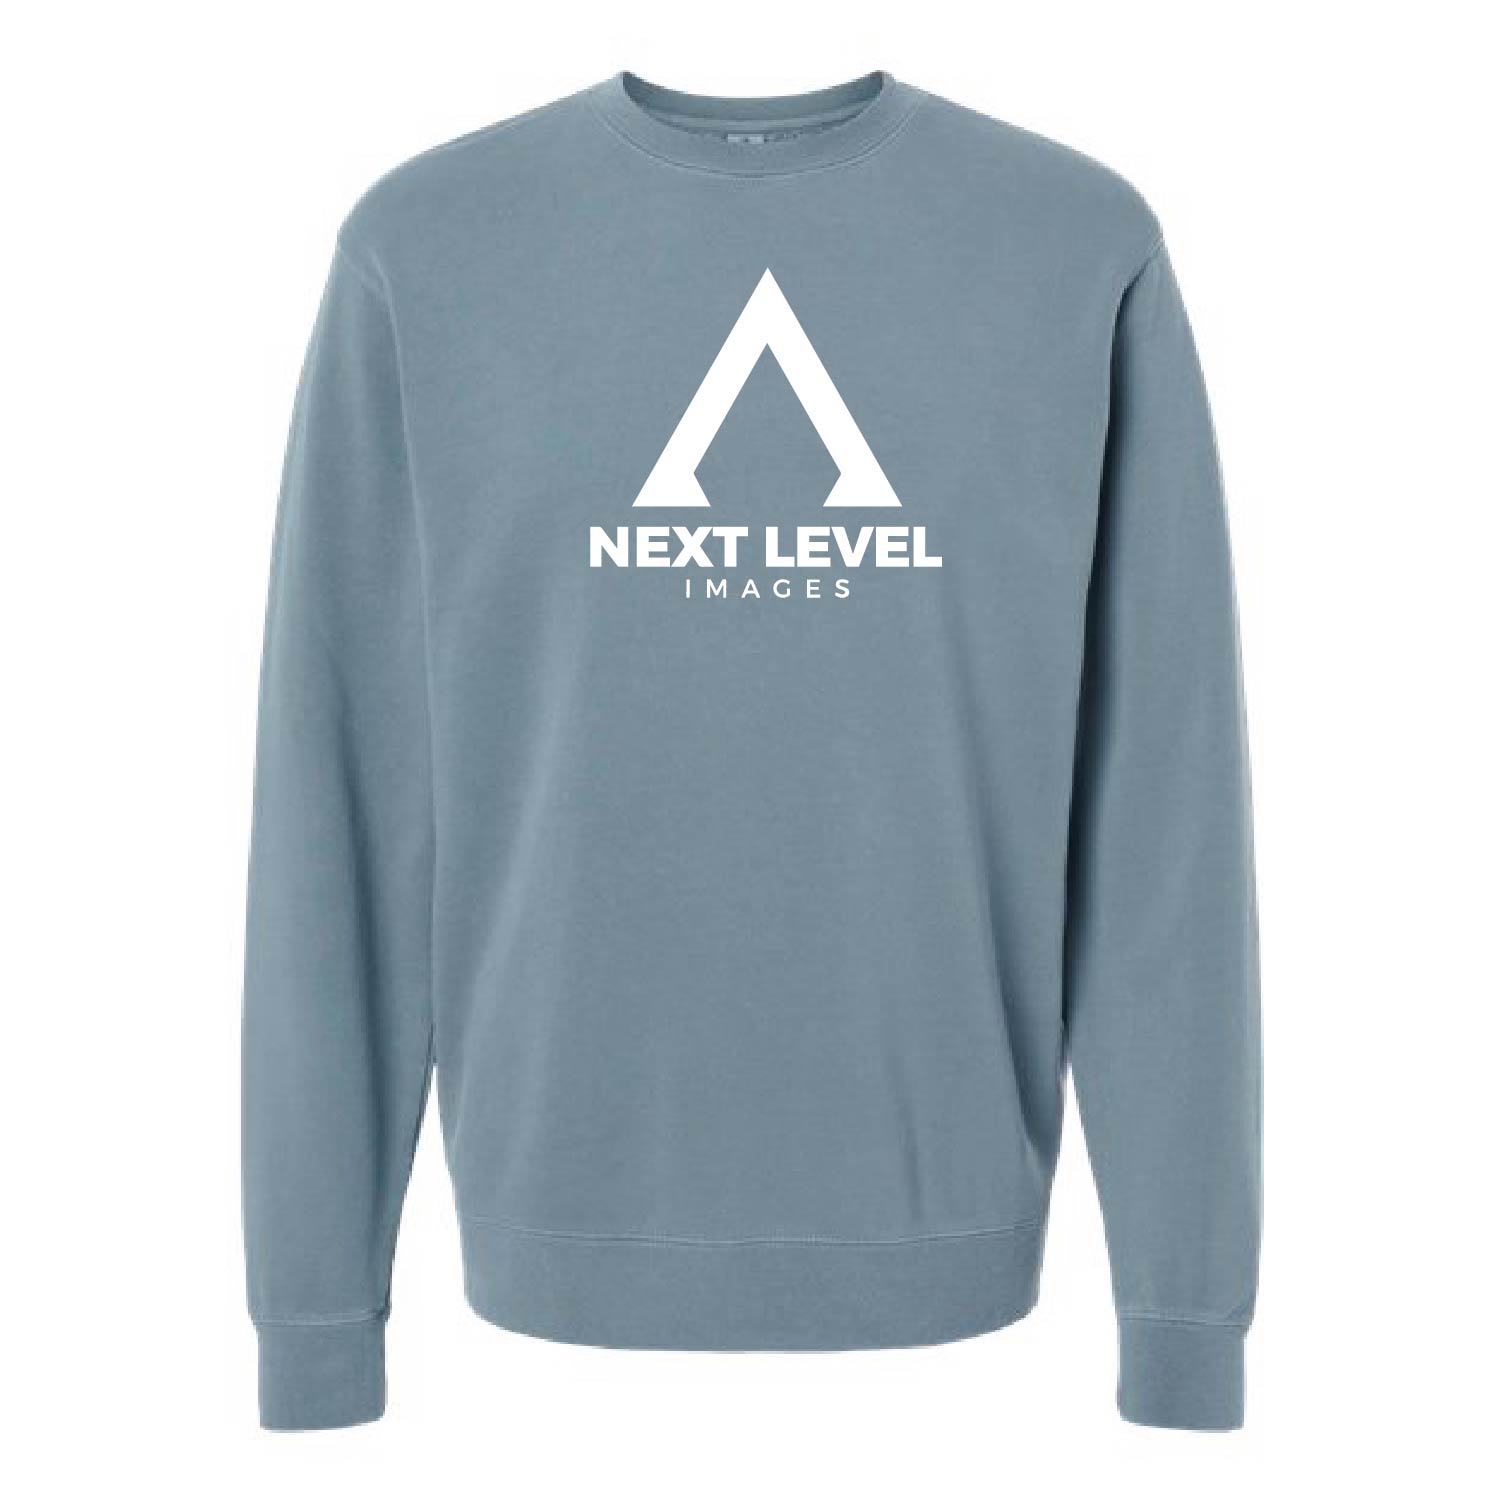 Next Level Images Sweatshirts